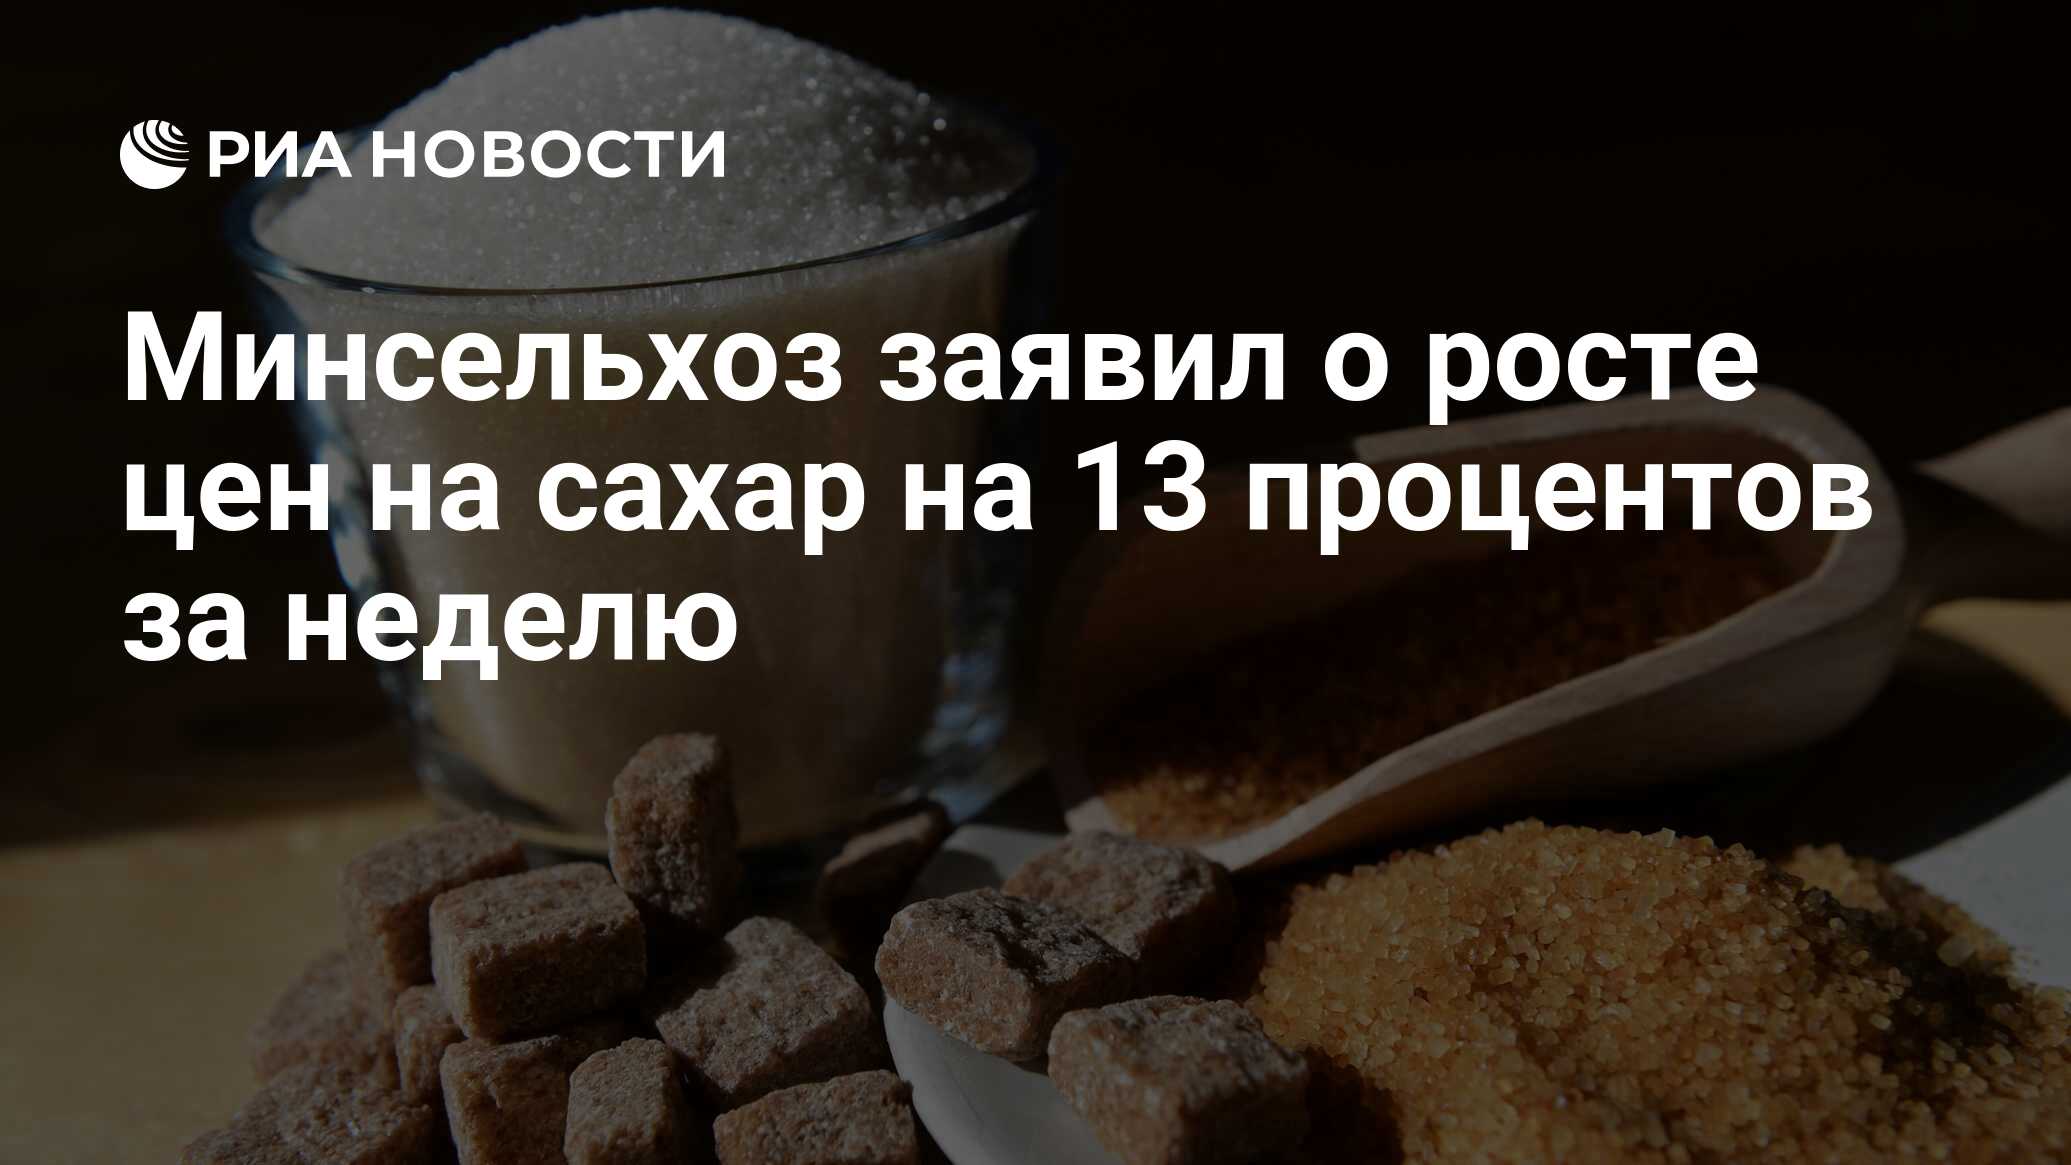 Ломка от сахара. Российские производители сахара. Закон о сахаре. Сахарная ломка по дням.